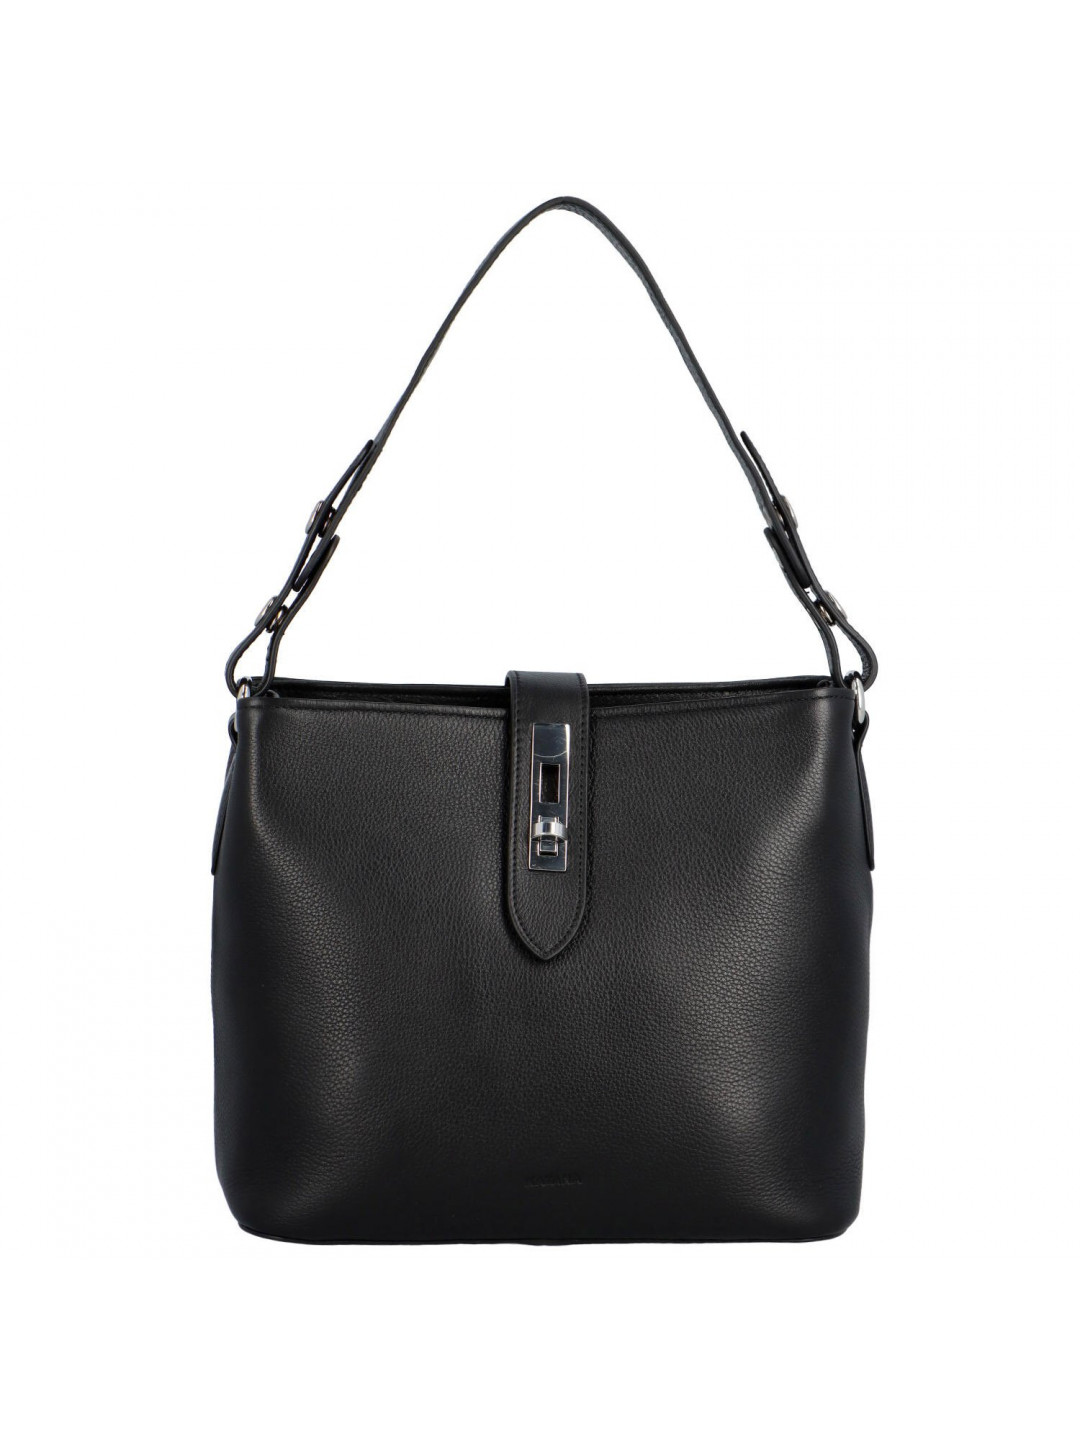 Luxusní dámská kožená kabelka Katana Mabel černá